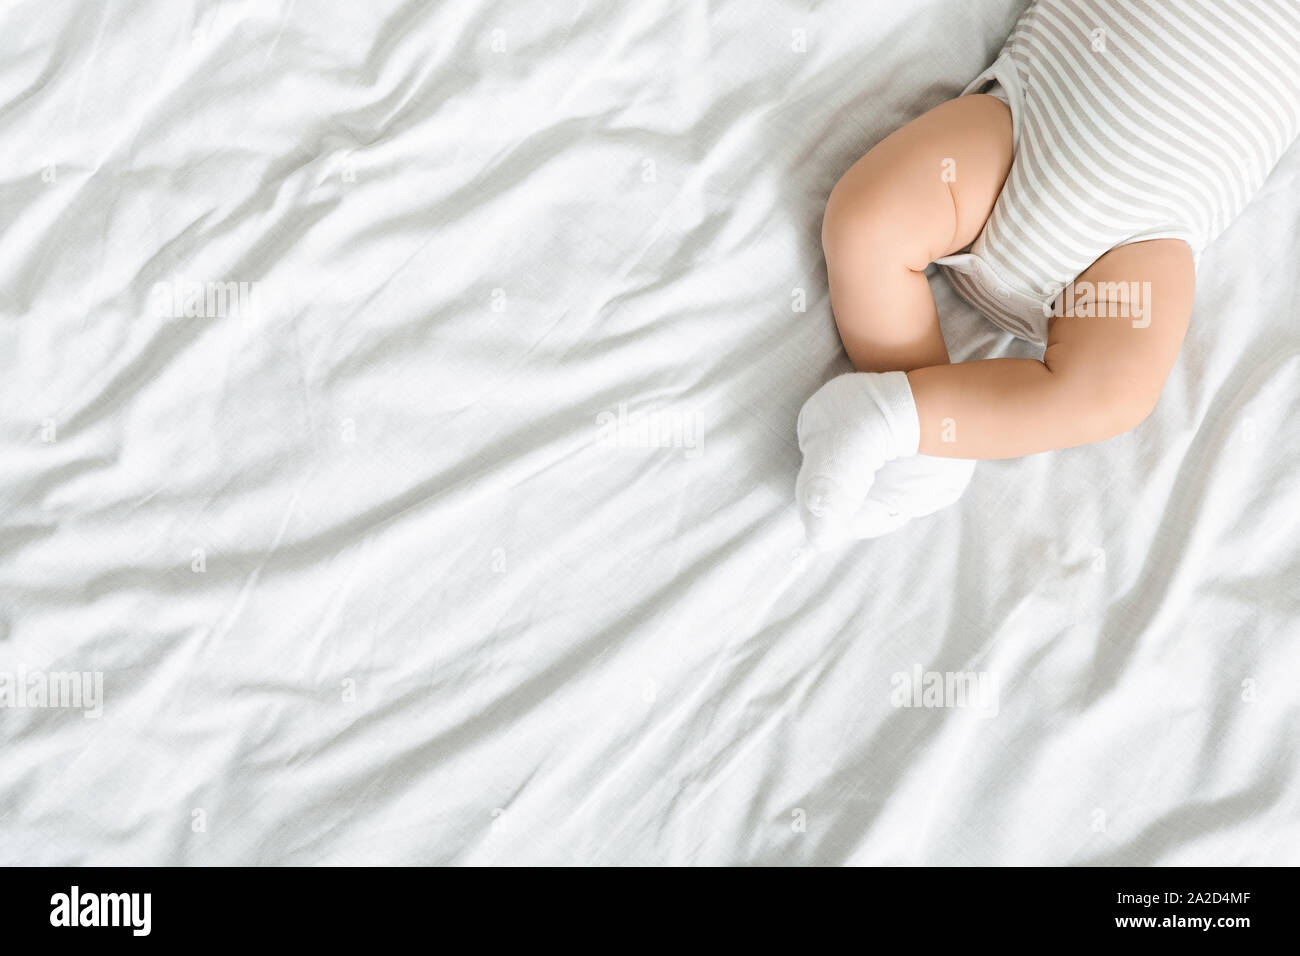 Vue de dessus de jambes croisées de bébé nouveau-né Banque D'Images